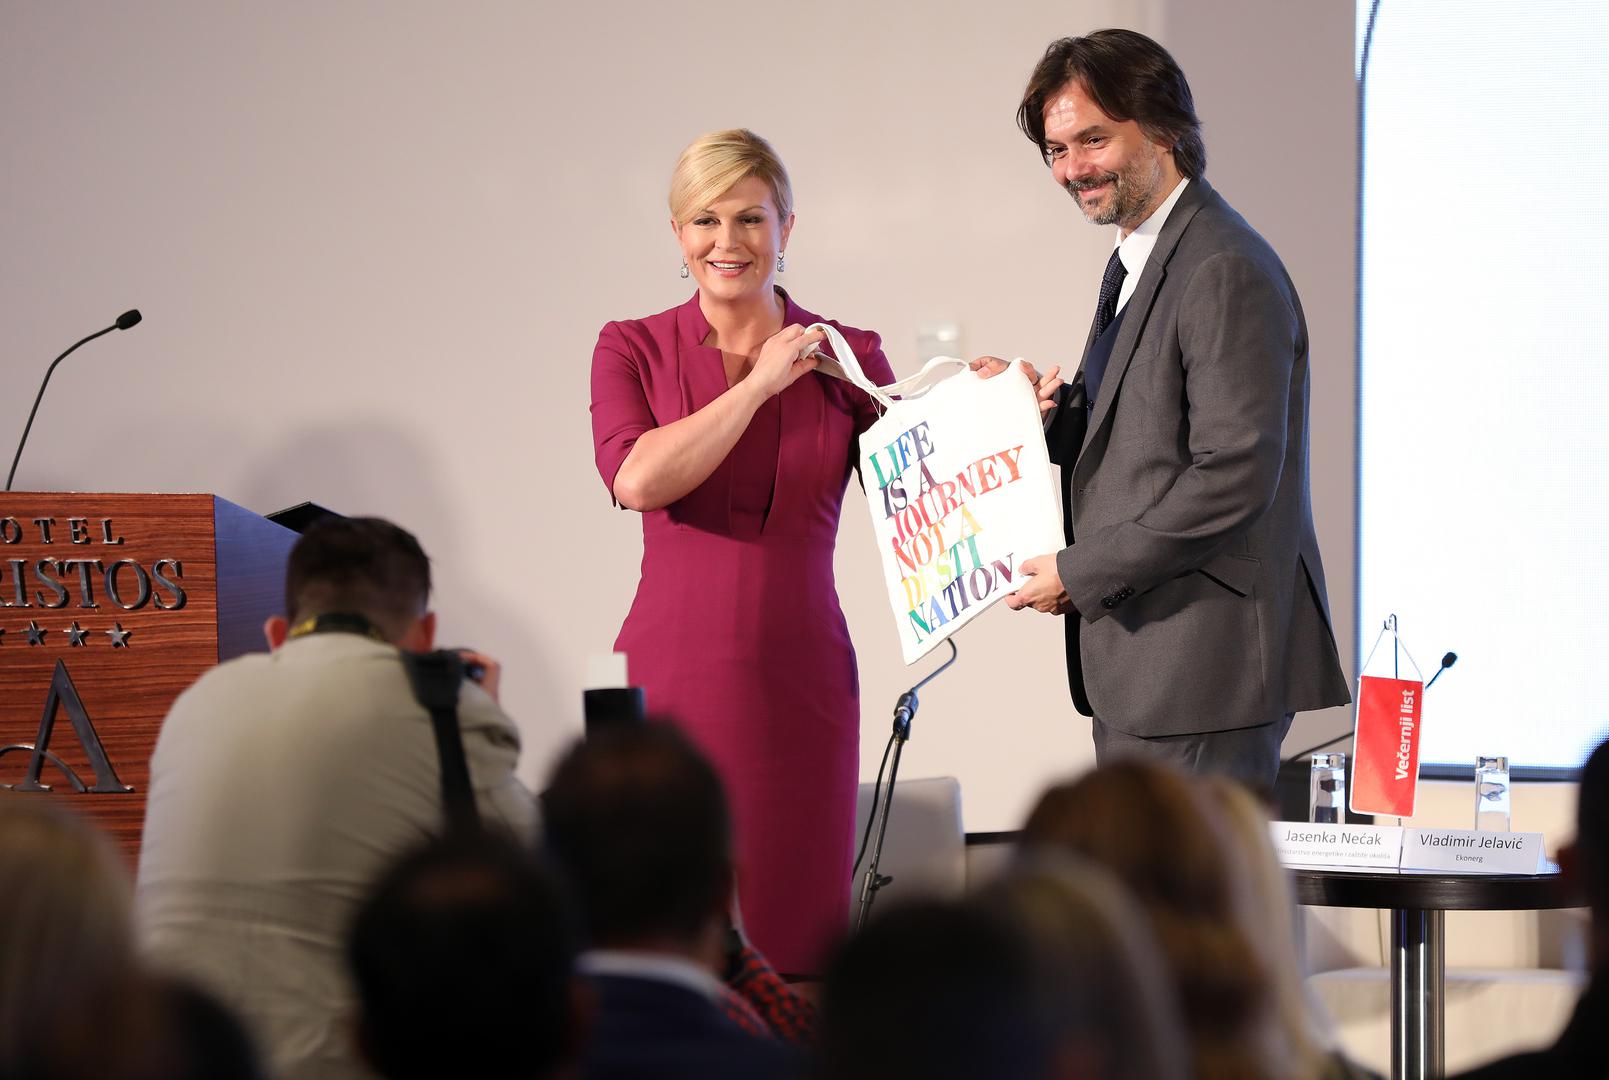 Predsjednica je Klariću kao osobni znak zahvale za organizaciju konferencije darovala platnenu vrećicu